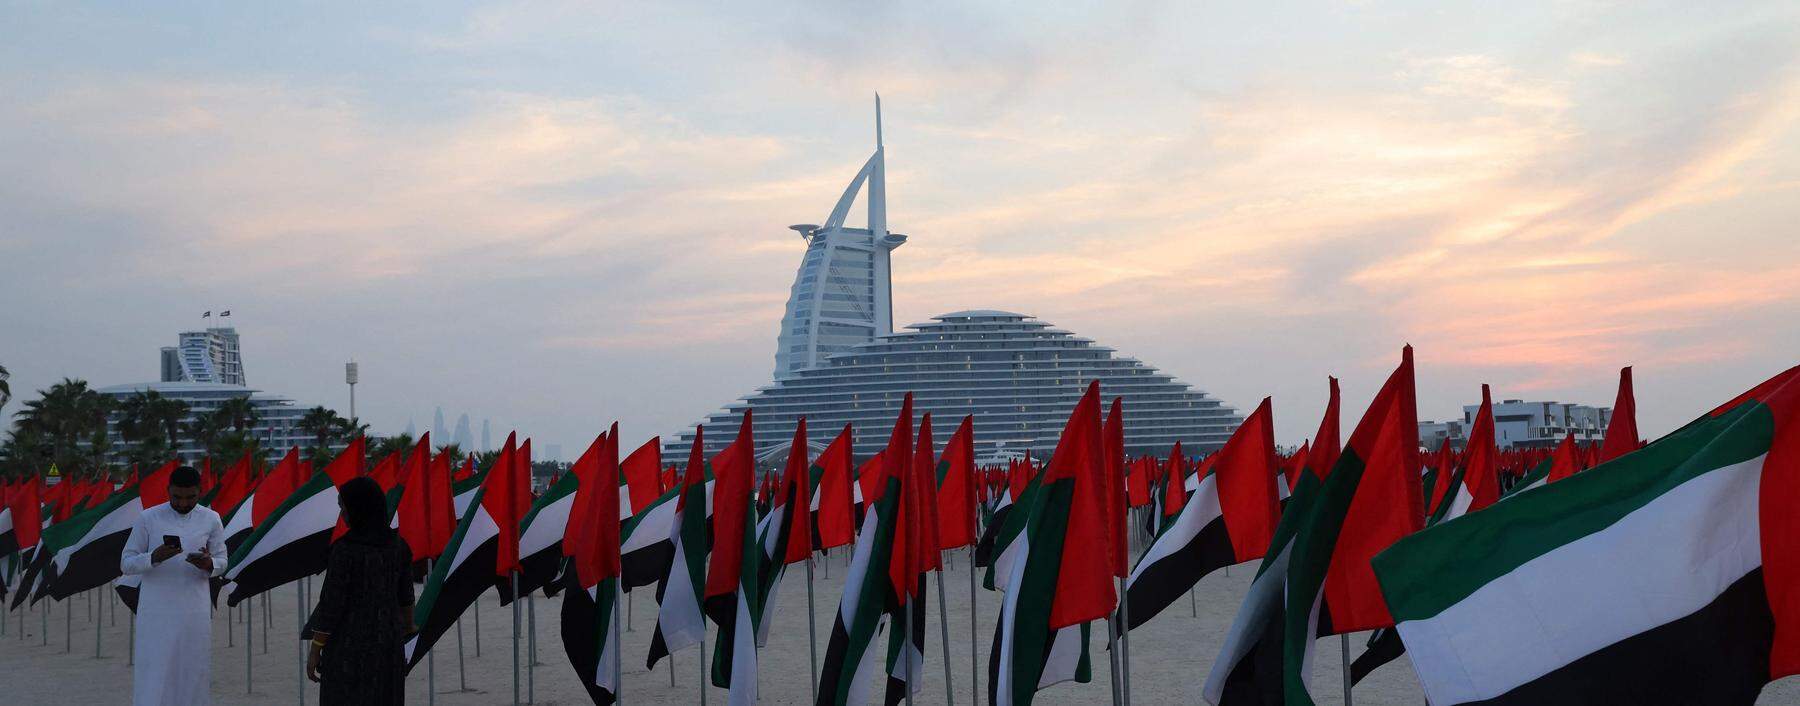 Flaggen vor dem Burj-Al-Arab-Wolkenkratzer in Dubai. Die Emirate setzten in den vergangenen Jahren auf gute Beziehungen zu Israel.